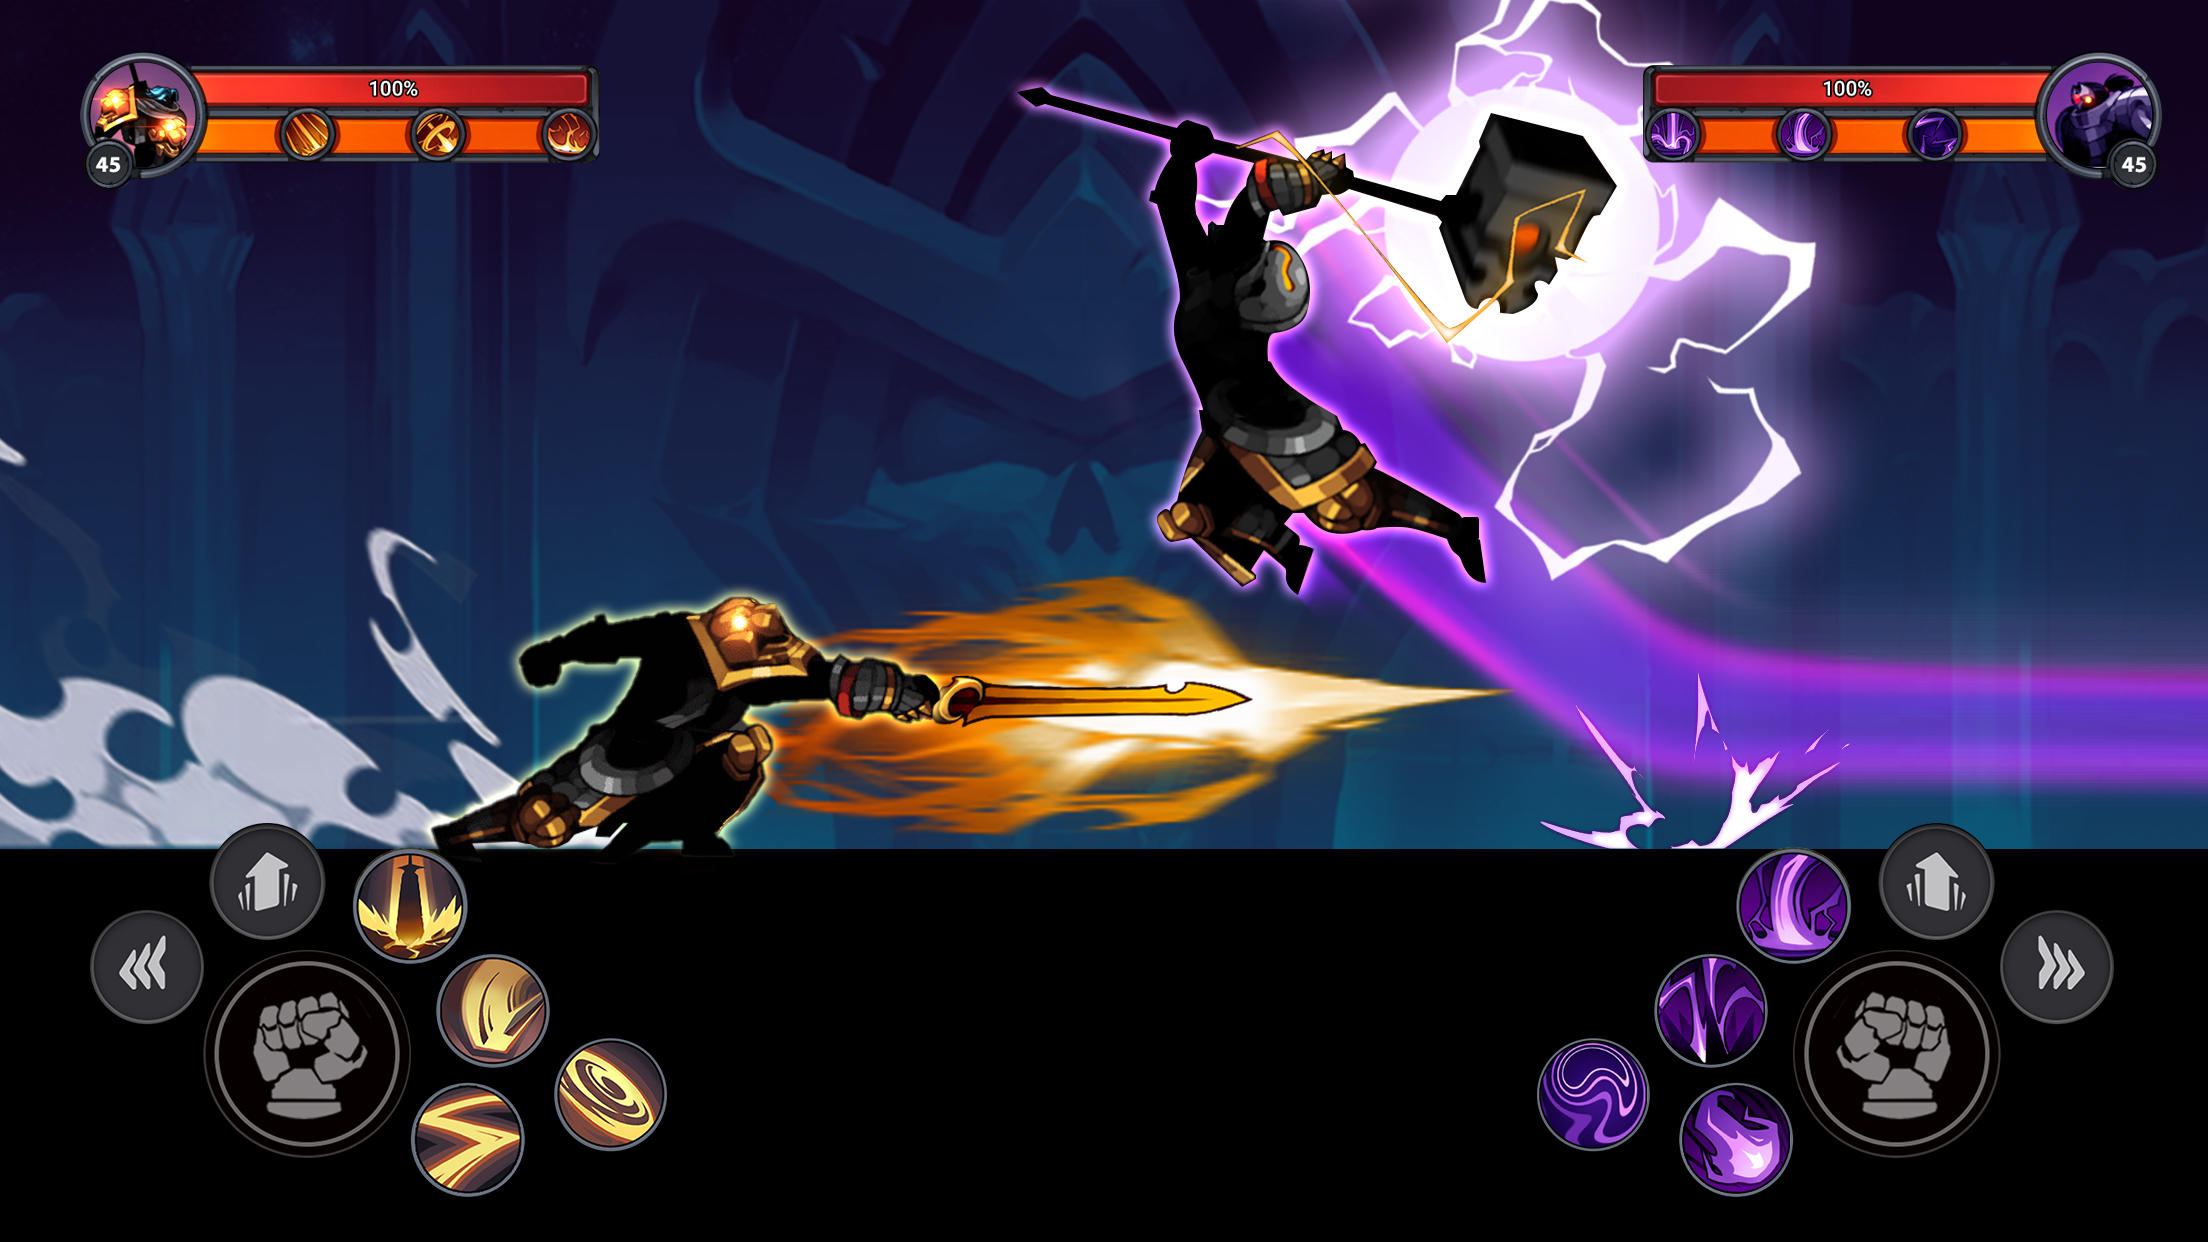 Screenshot 1 of Bậc thầy người que: Ninja bóng tối 1.9.8